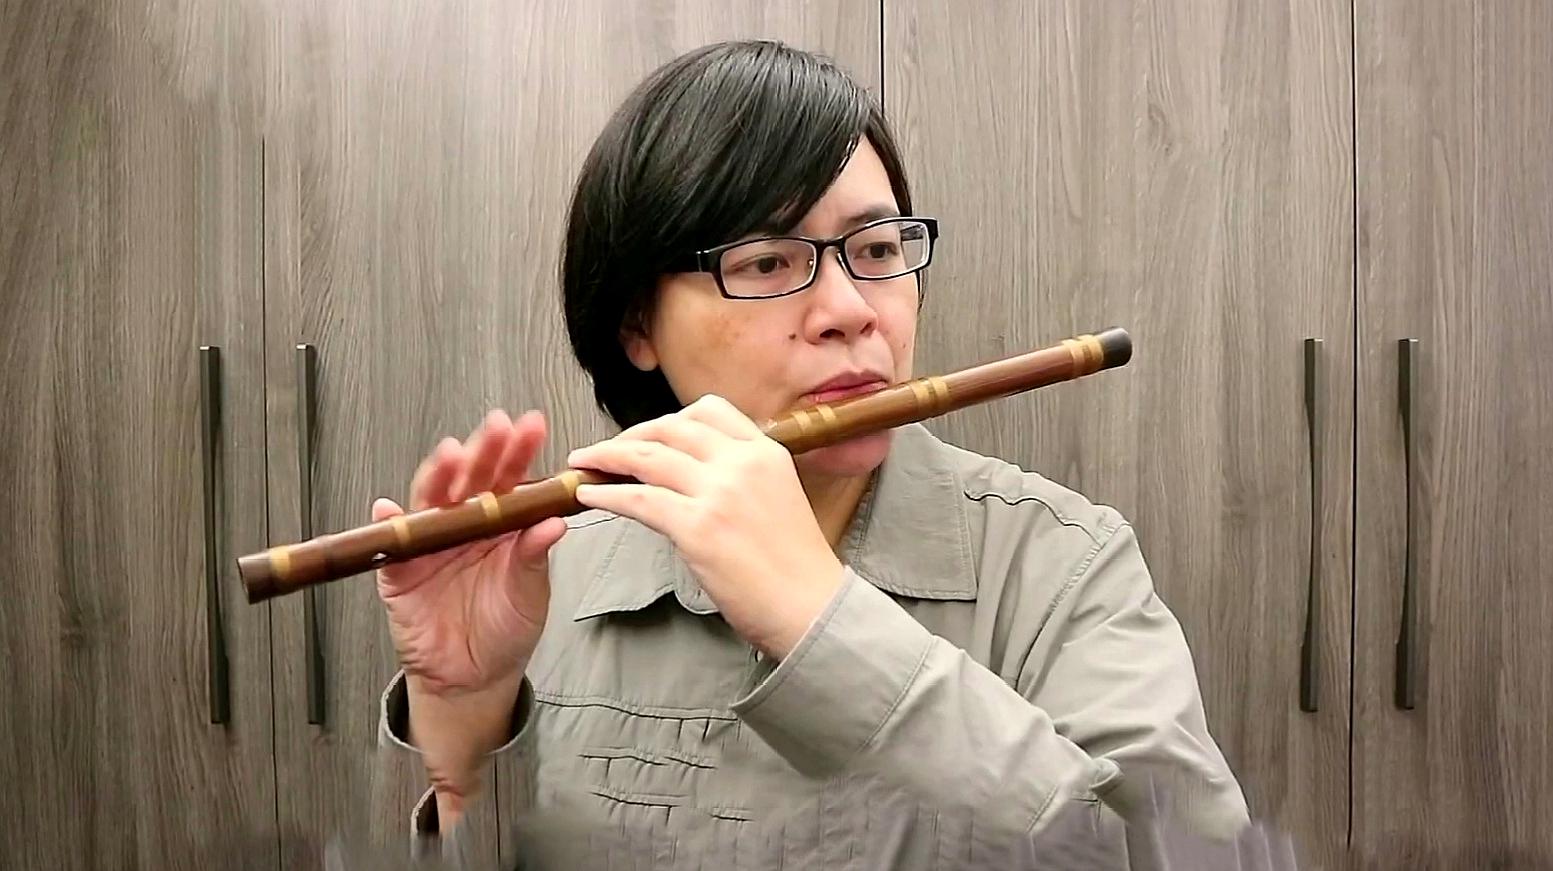 竹笛入门|吹奏竹笛的呼吸方法-学习视频教程-腾讯课堂